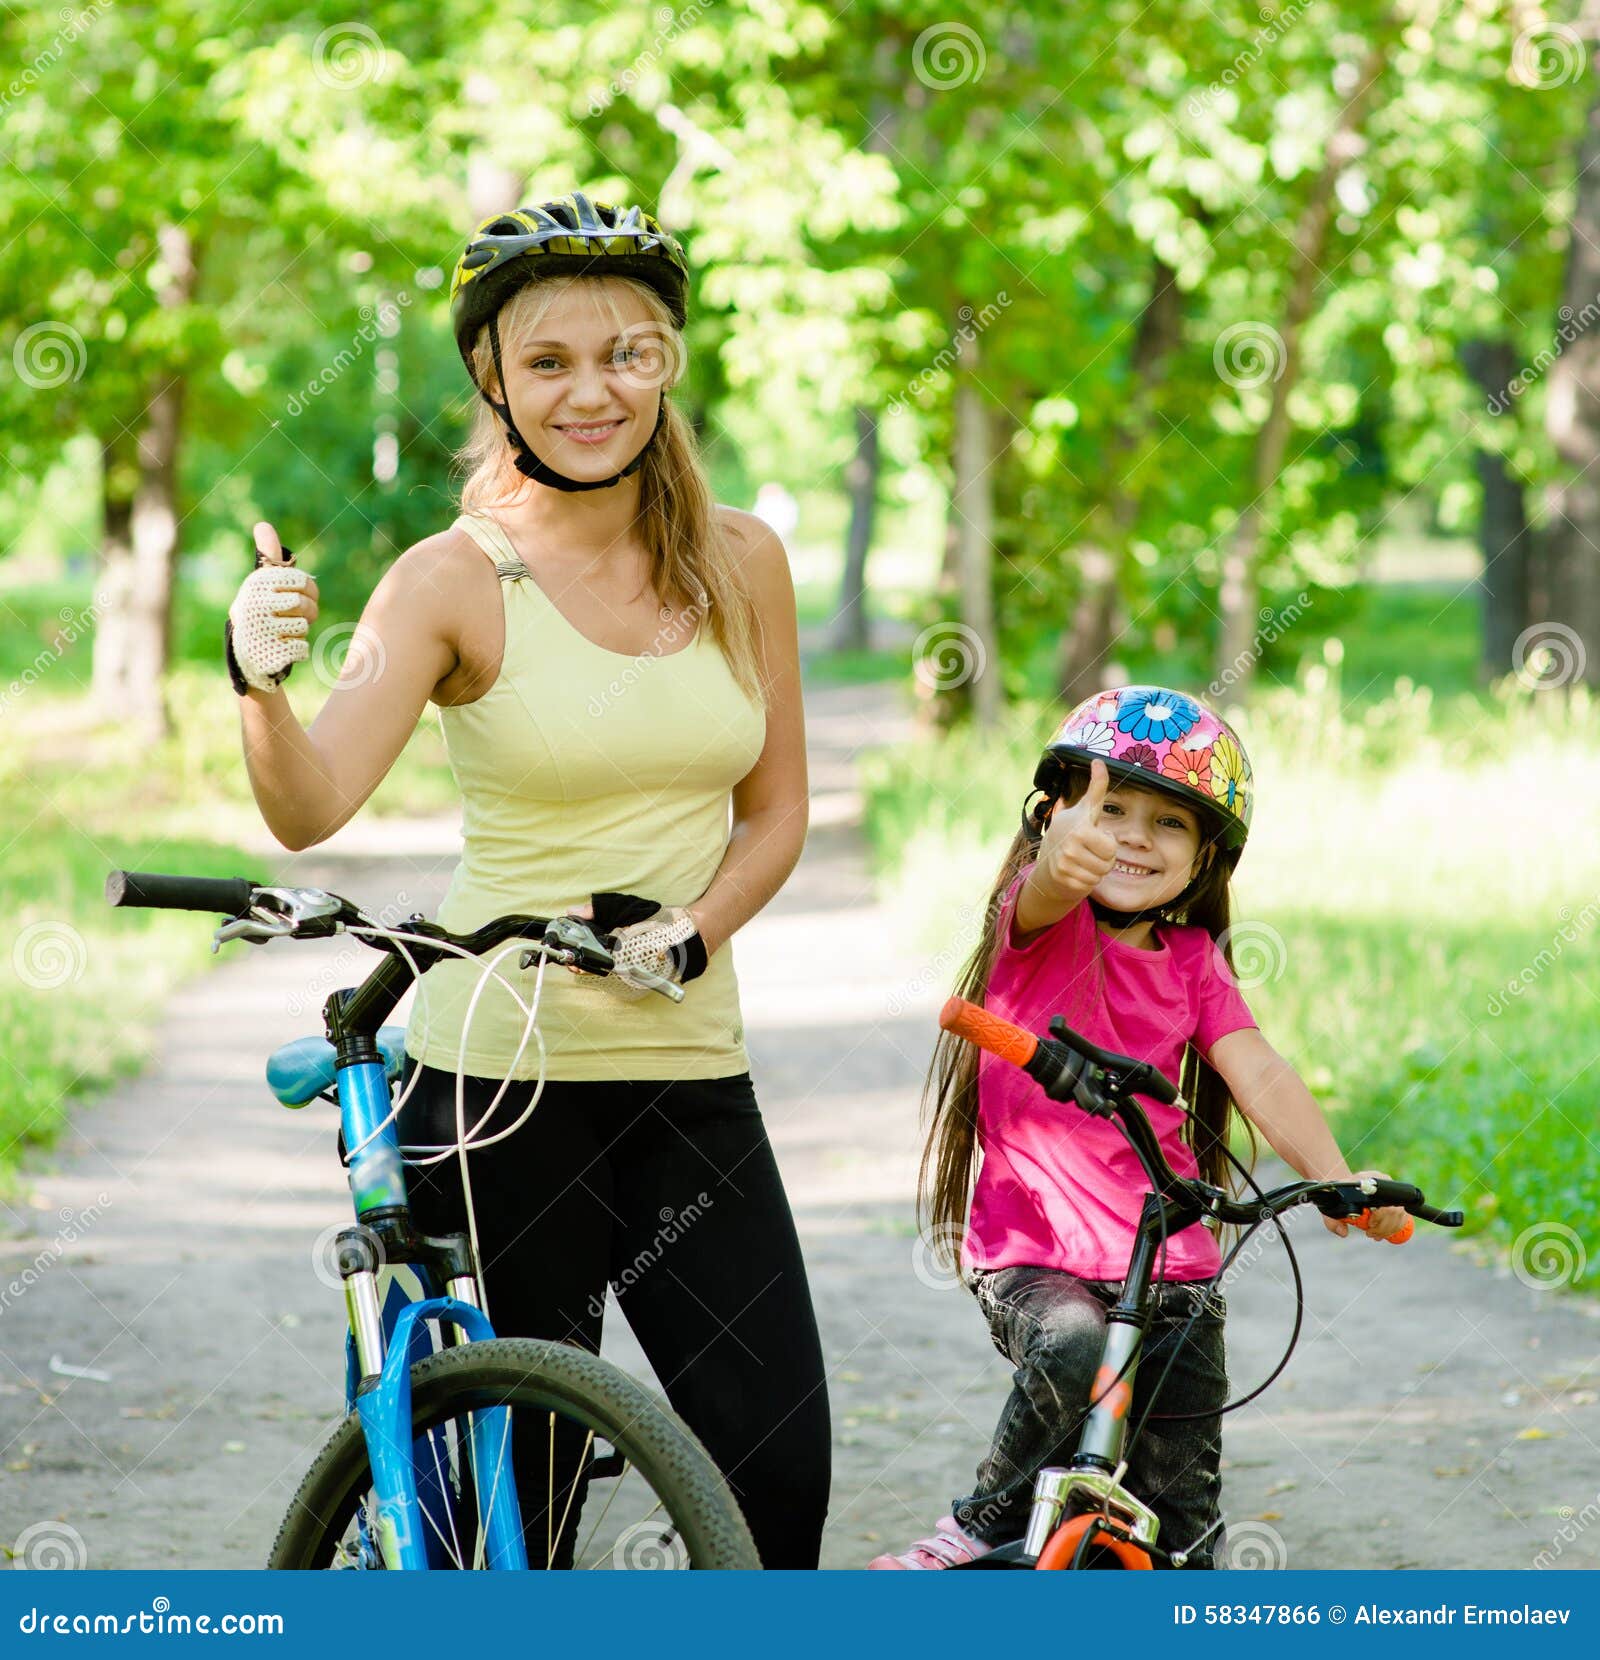 母亲和小女儿自行车的在夏天 库存图片. 图片 包括有 旅途, 骑自行车的人, 孩子, 保护, 乐趣, 本质 - 55030015